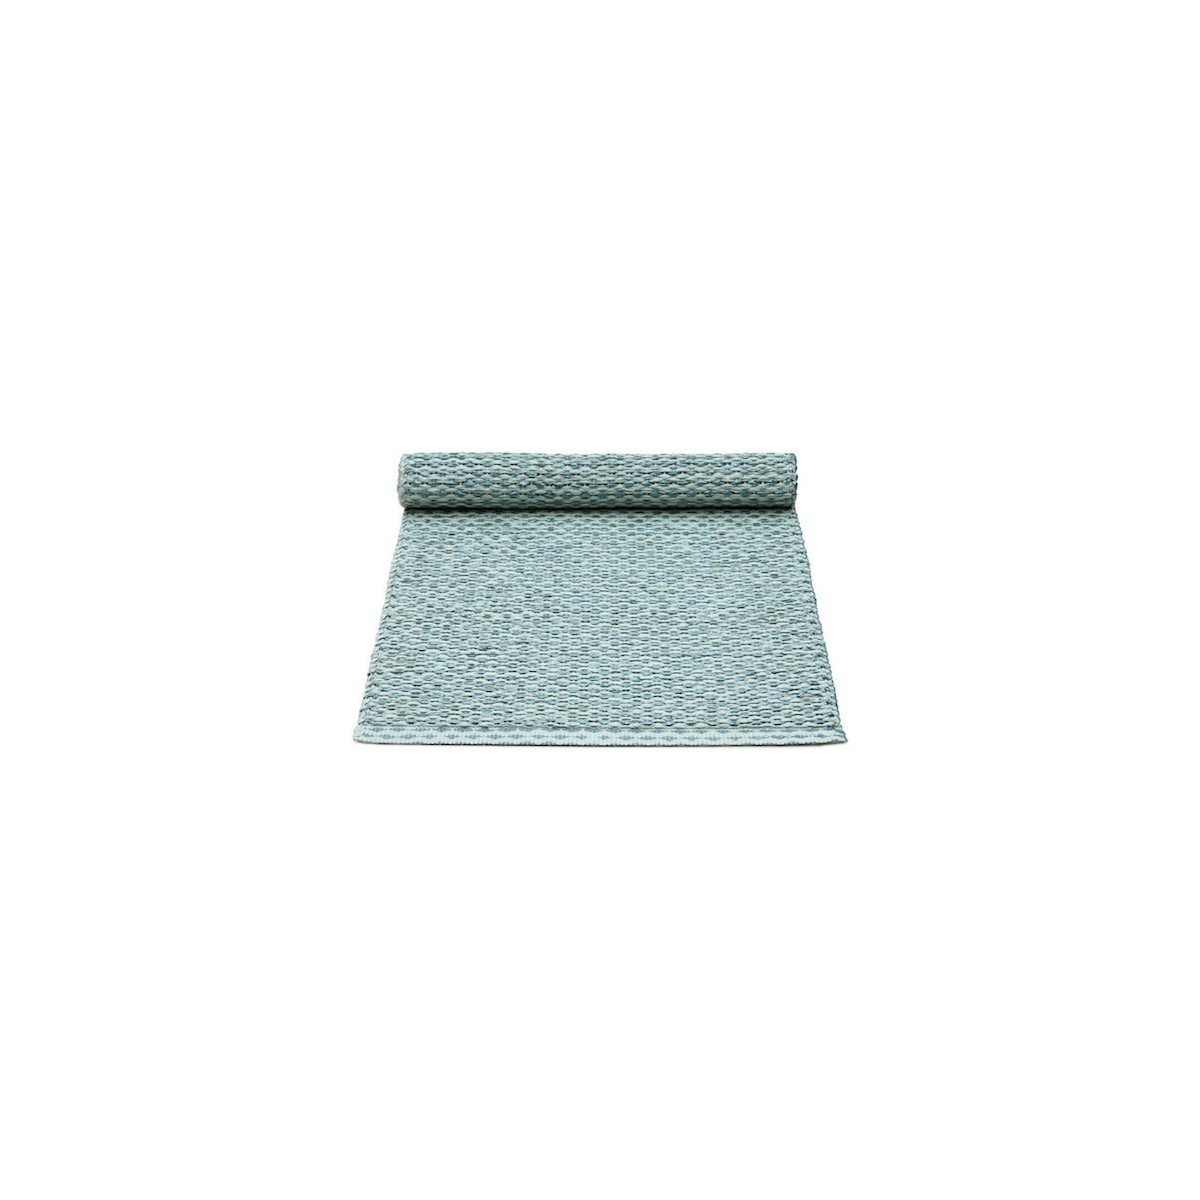 36x130cm - bleu azur métallique / turquoise pâle - chemin de table Svea